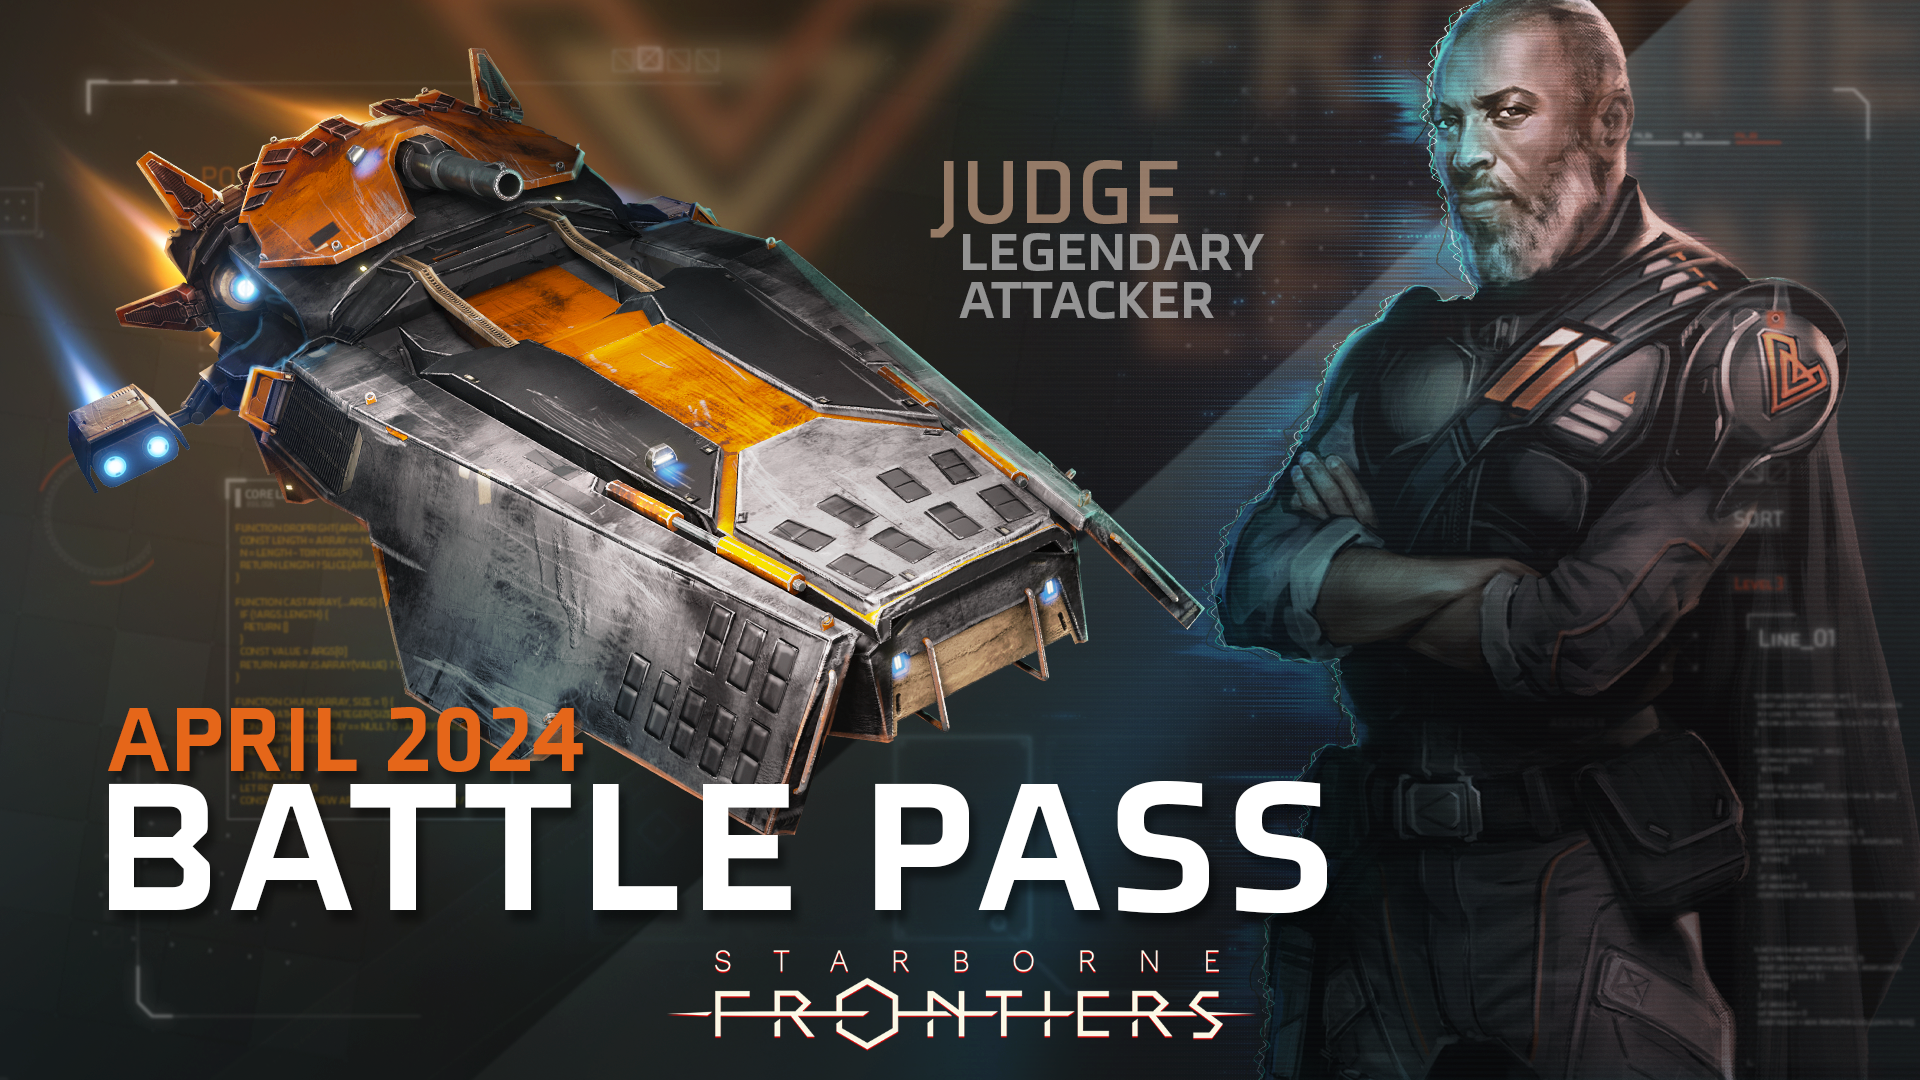 Battle Pass - Judge